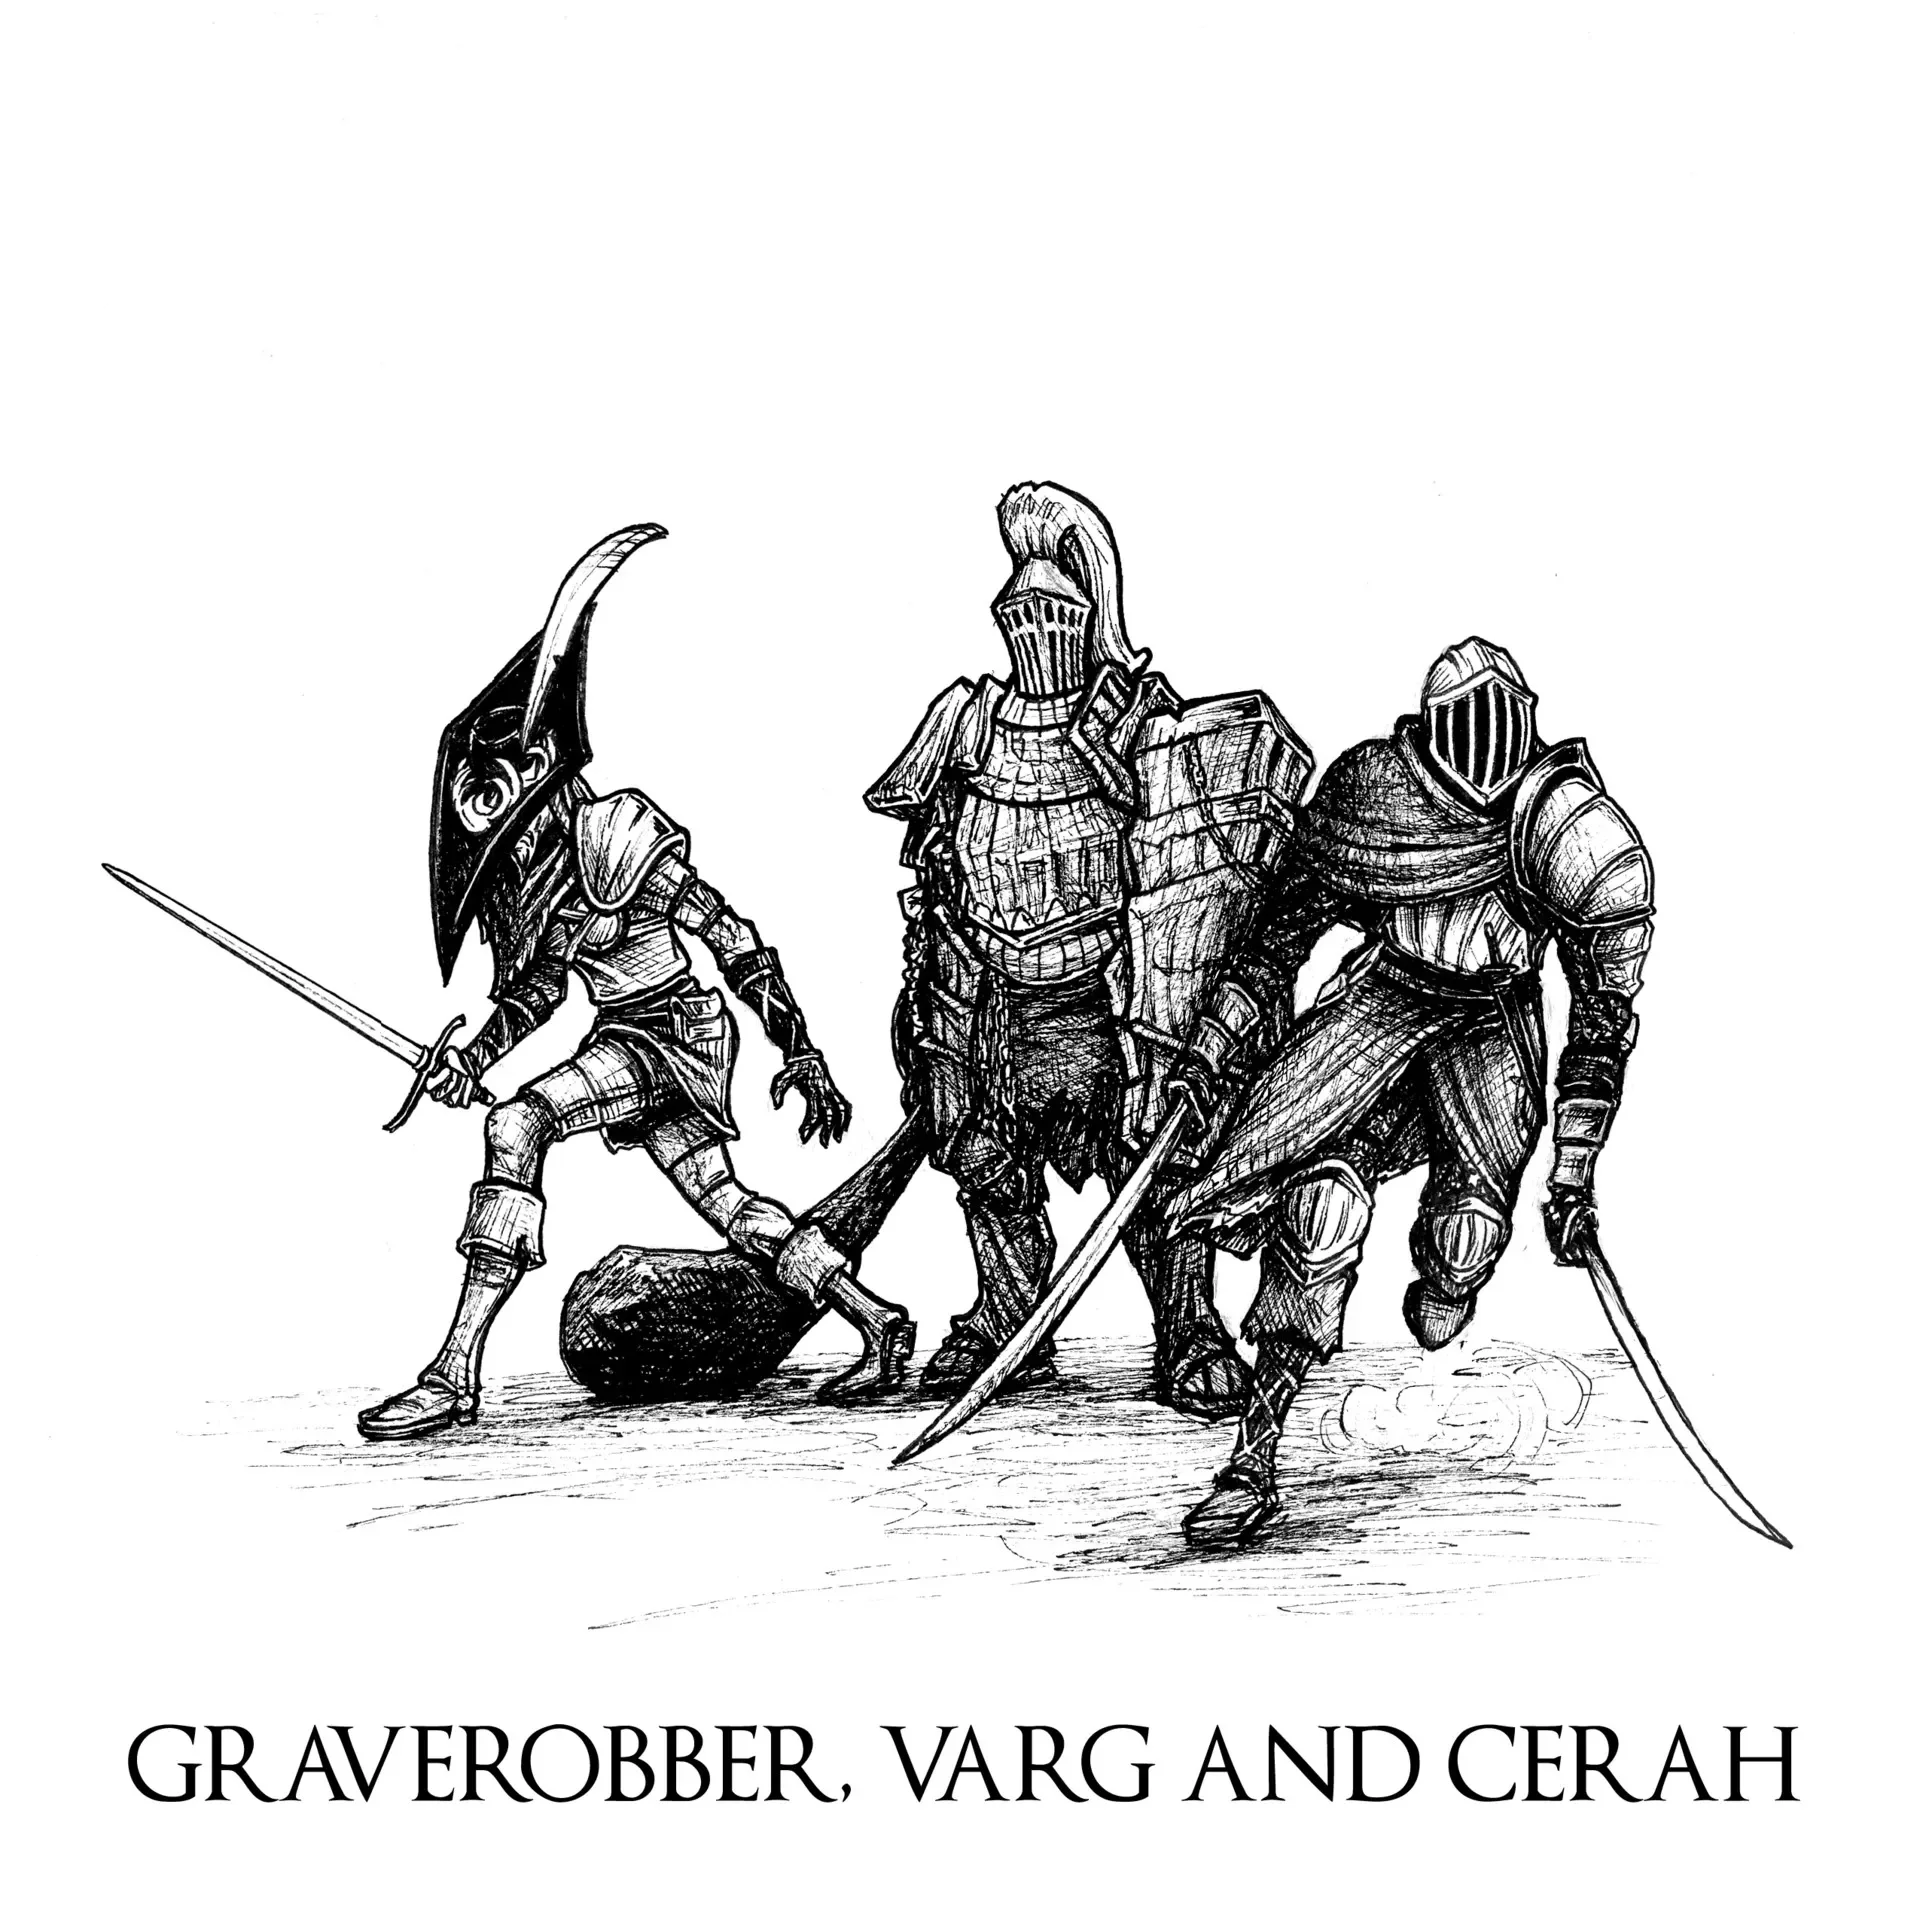 Graverobber, Varg, and Cerah